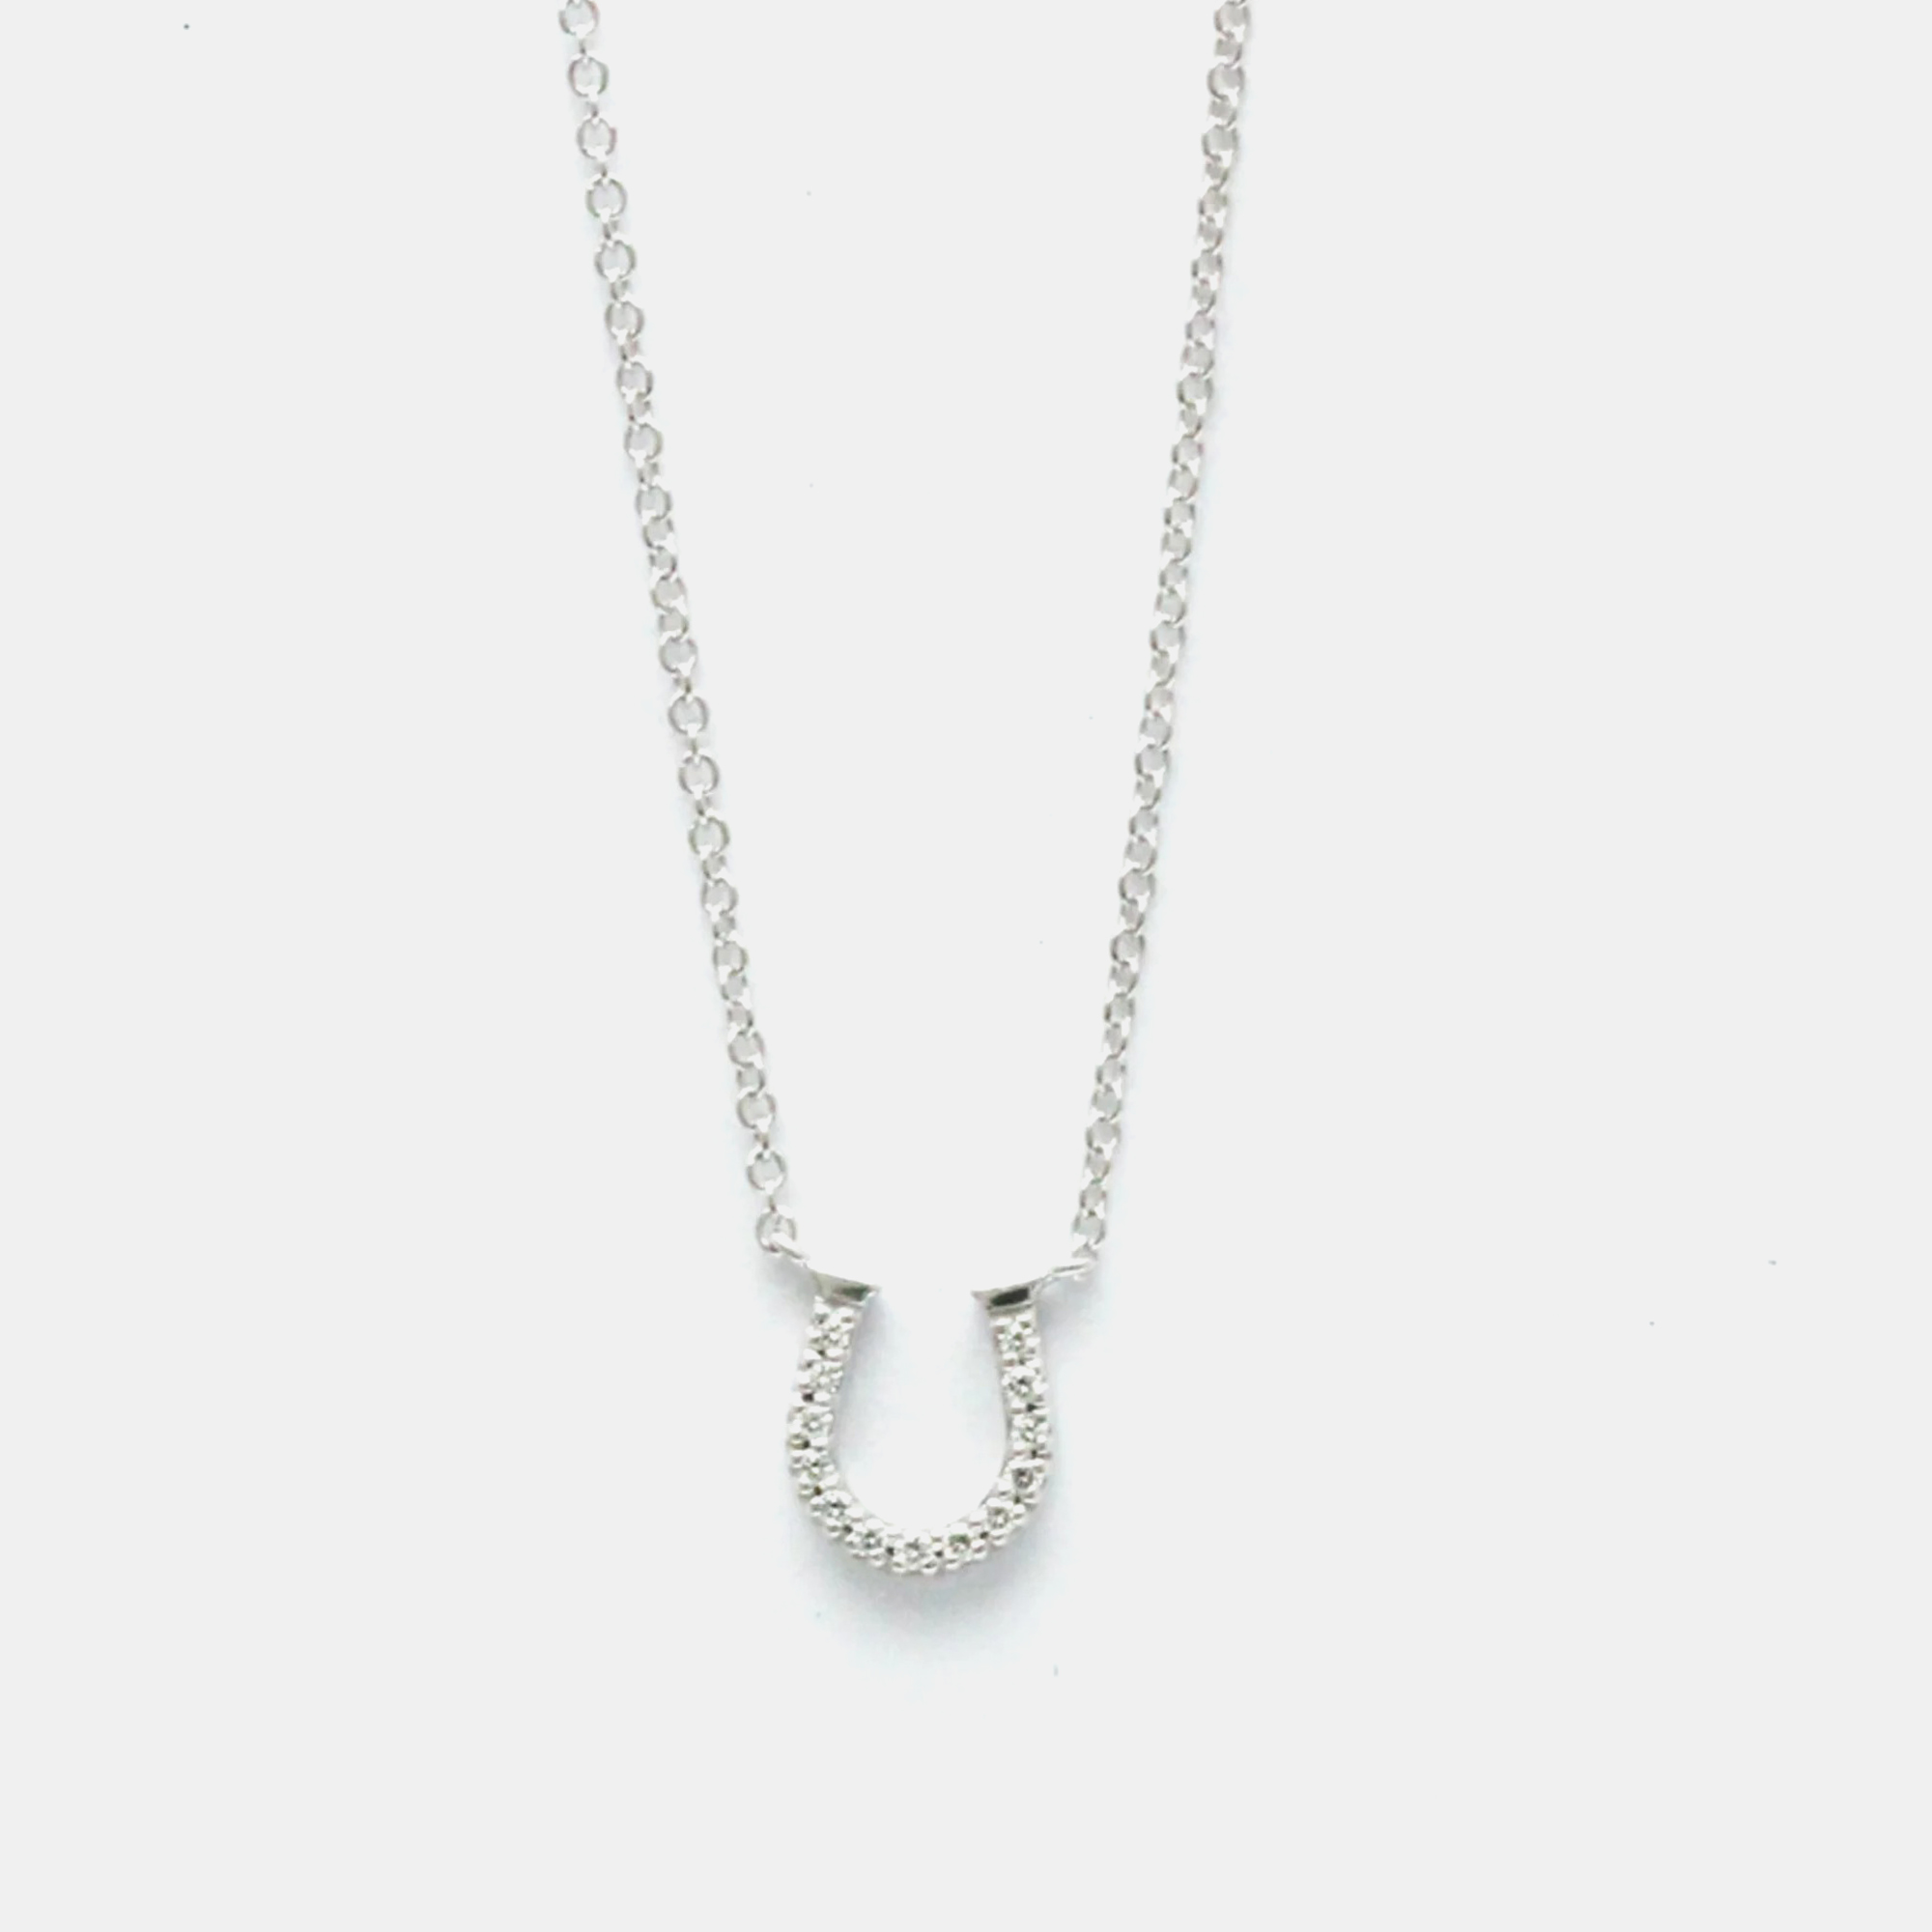 Tiffany & co. 18k white gold and diamond horseshoe pendant necklace